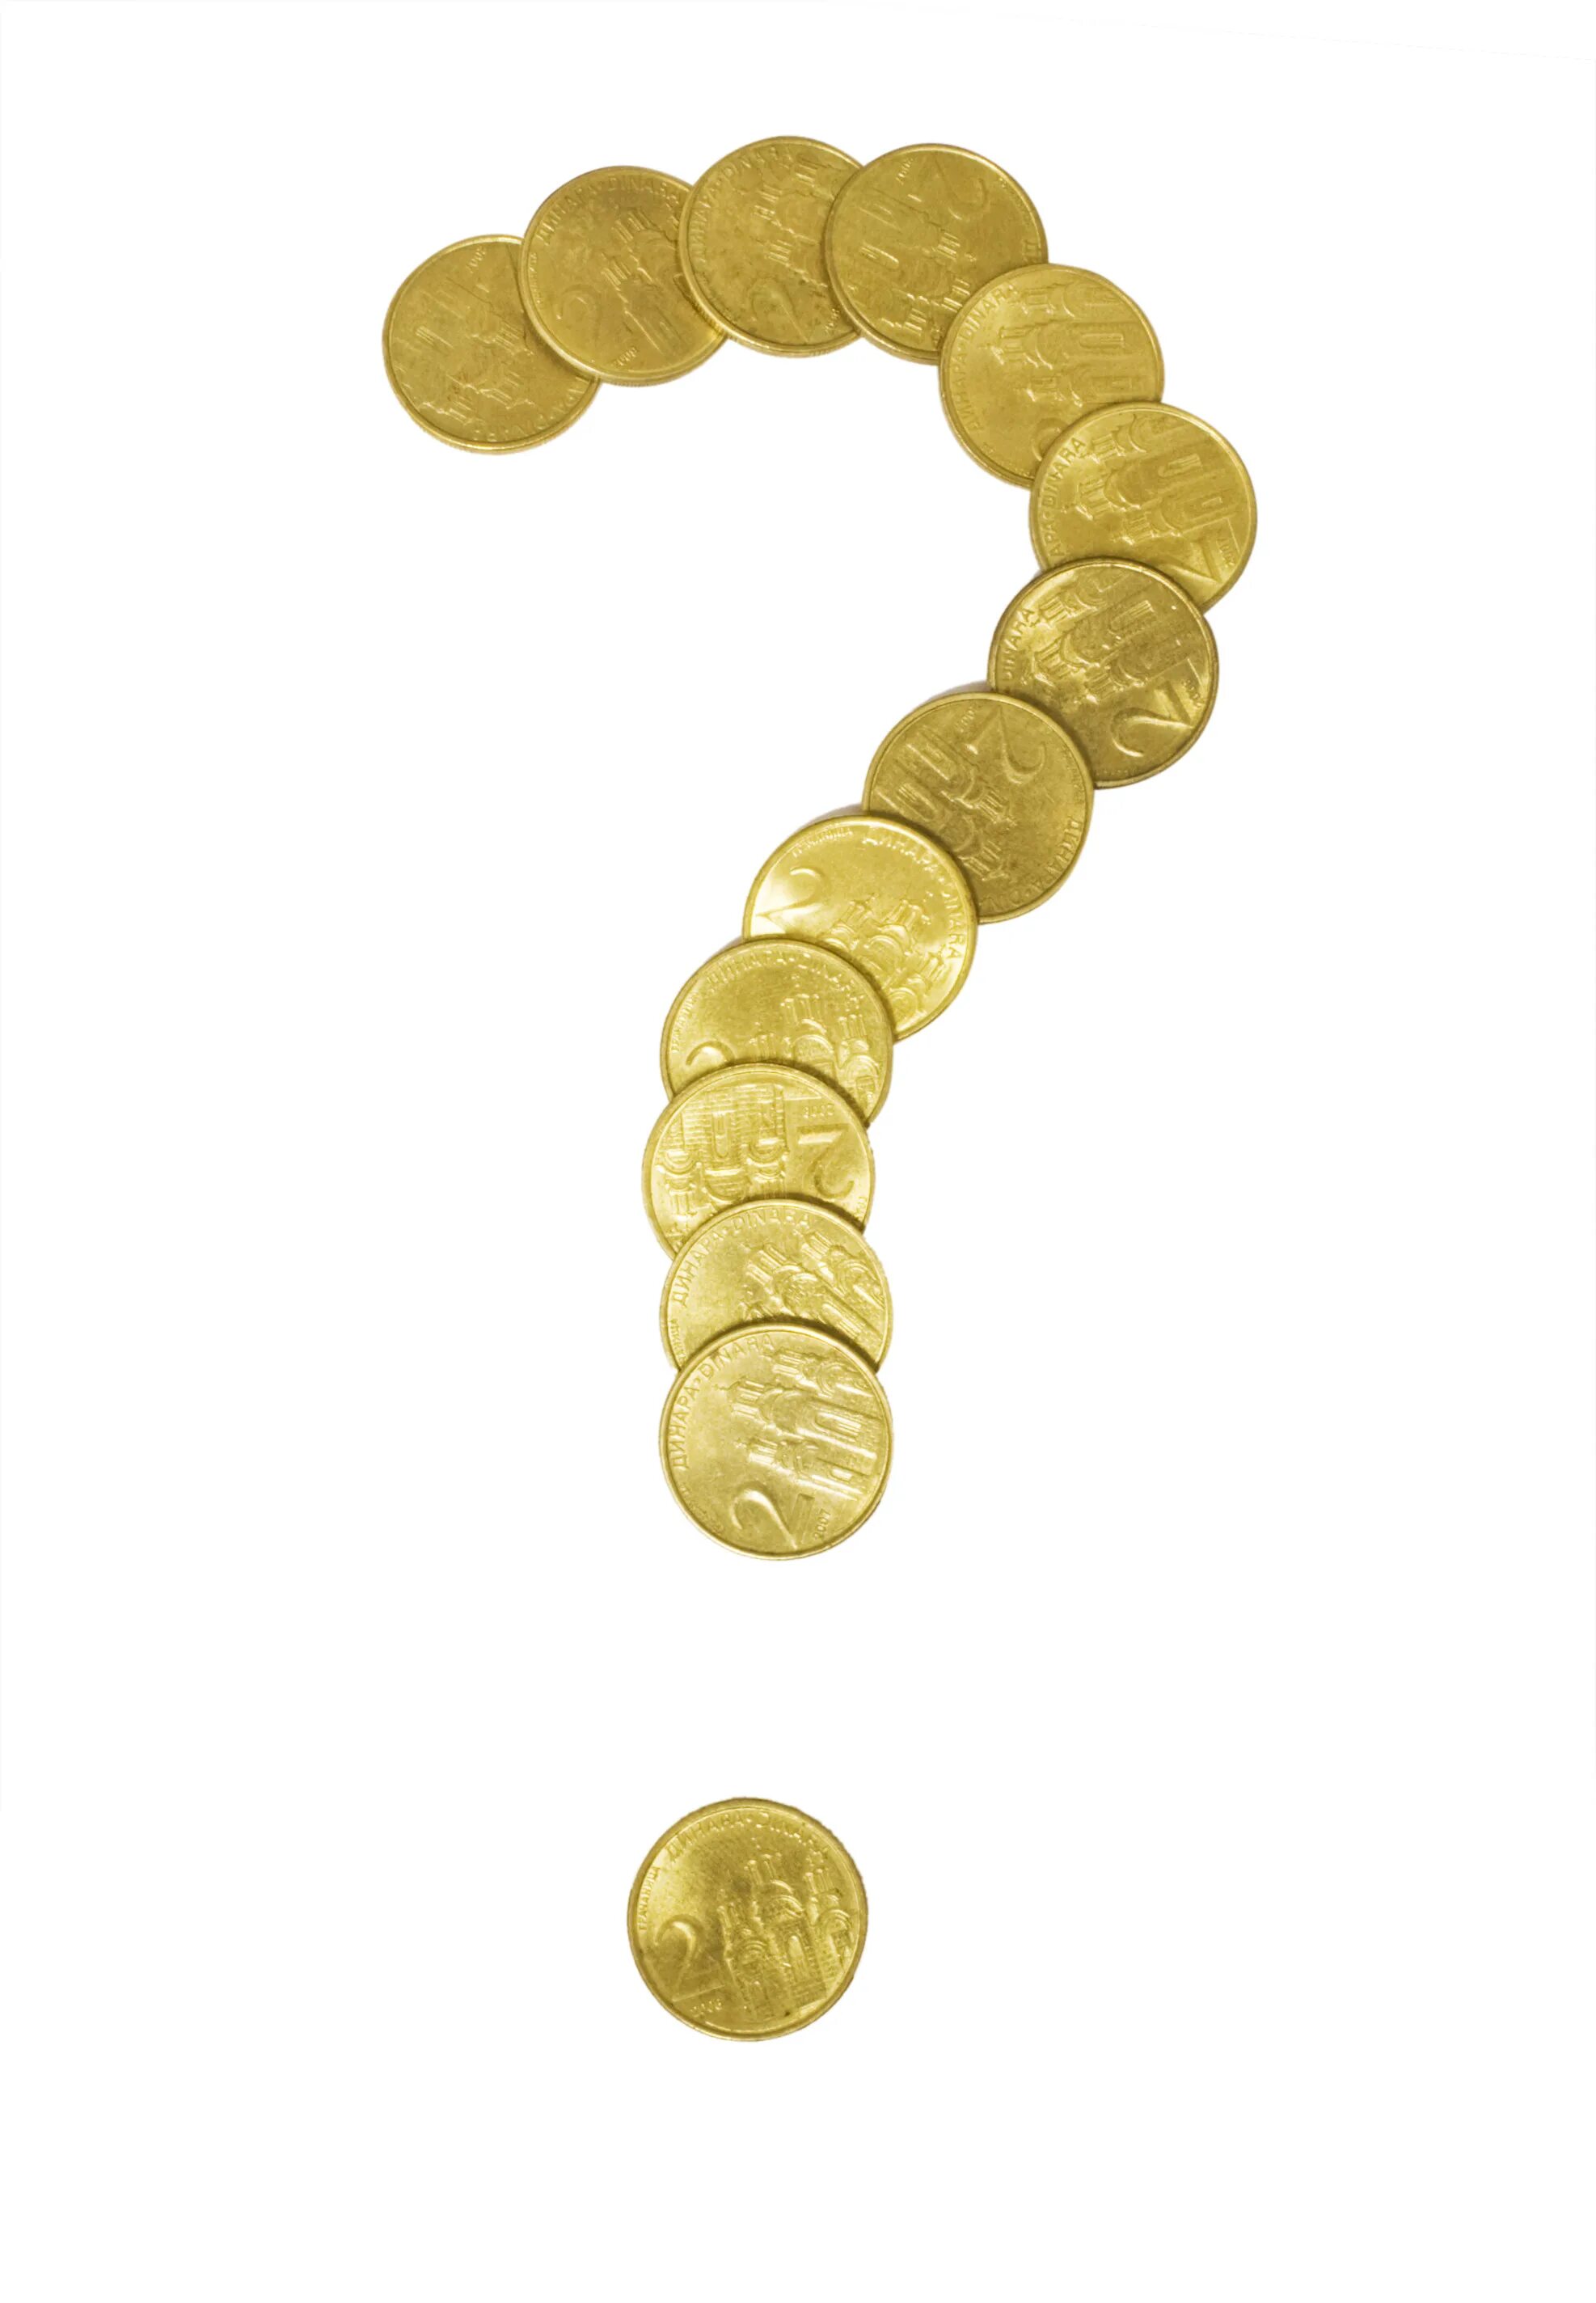 6 вопросов и деньги. Денежный вопрос. Деньги и знак вопроса. Вопросы про деньги. Вопрос из денег.